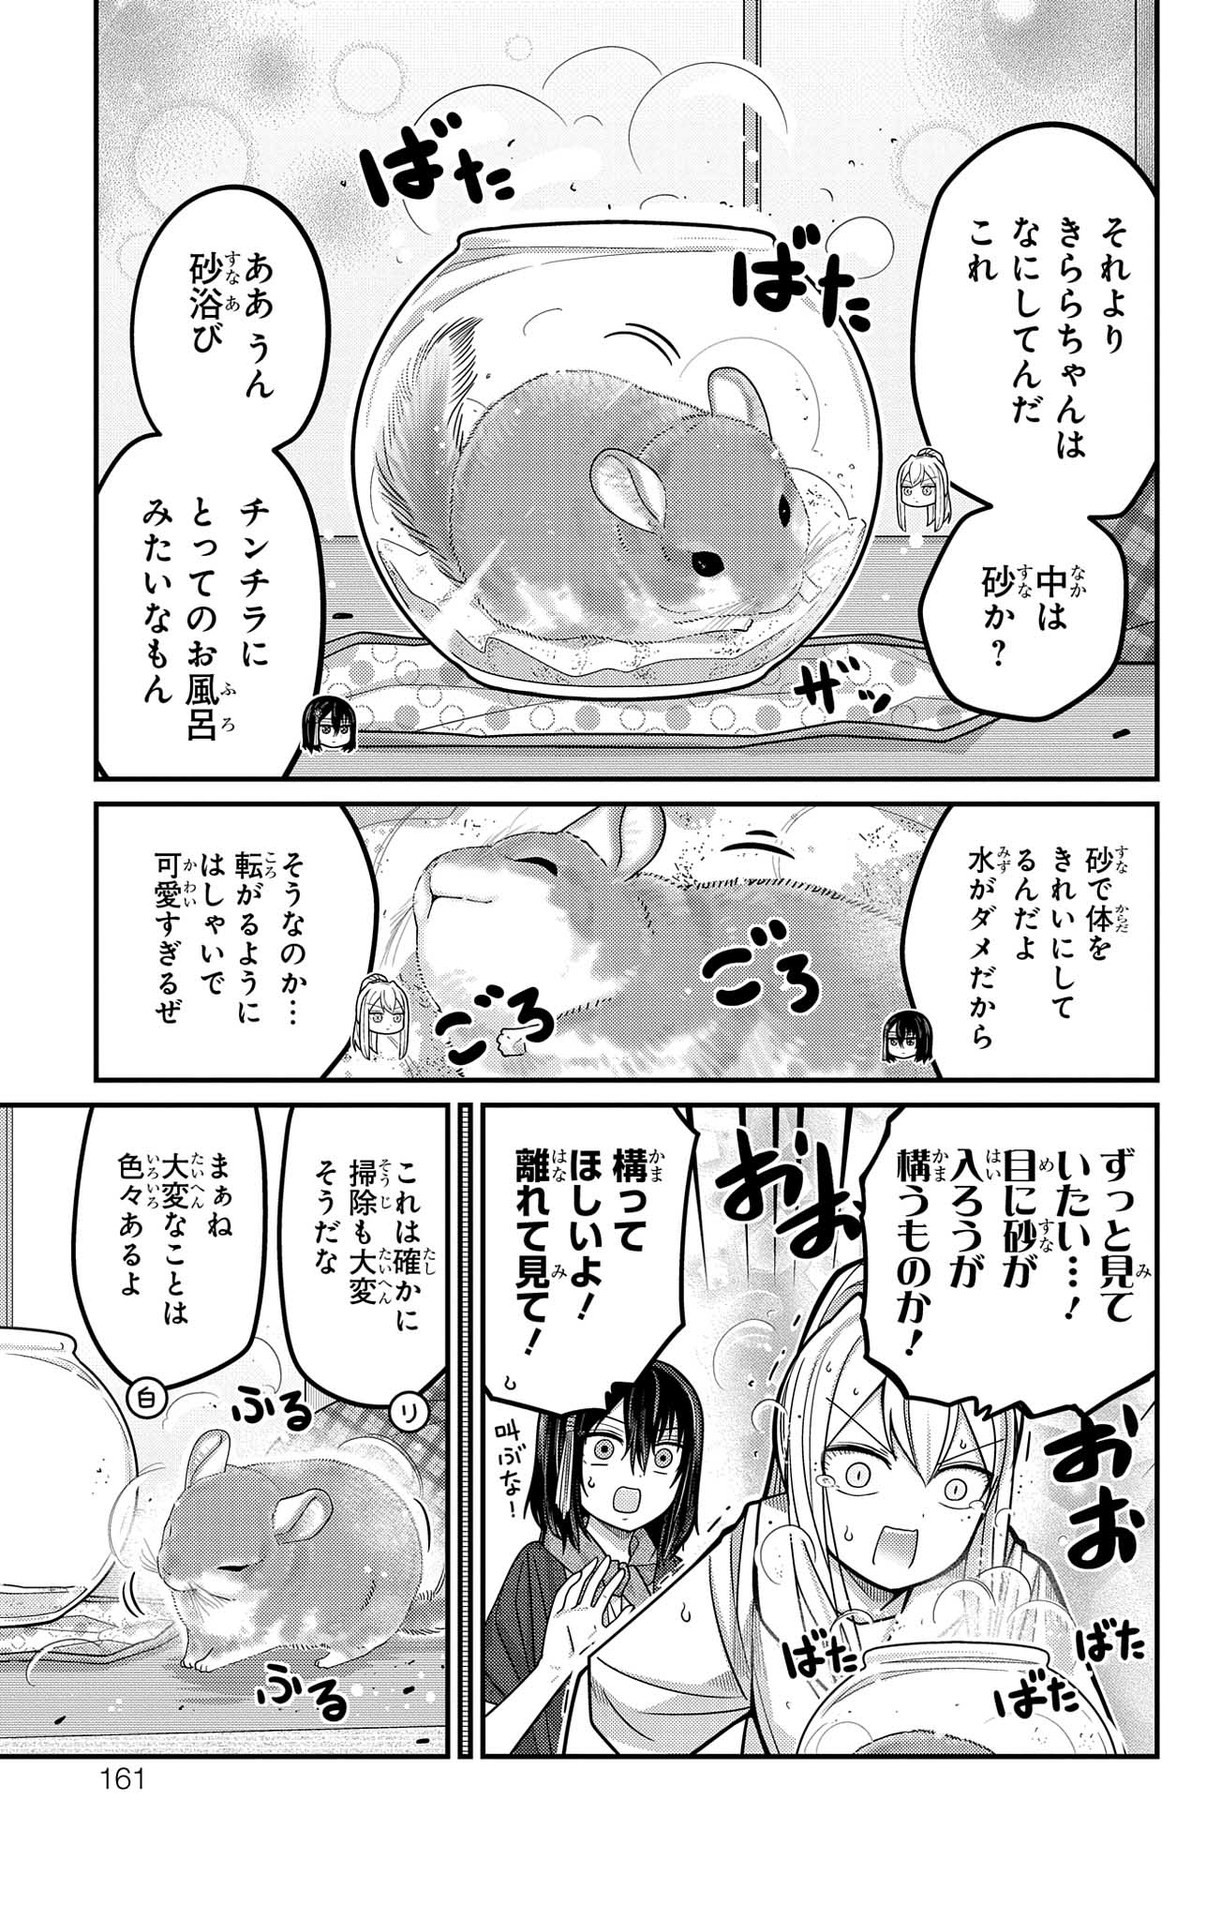 Kawaisugi Crisis - Chapter 94 - Page 3